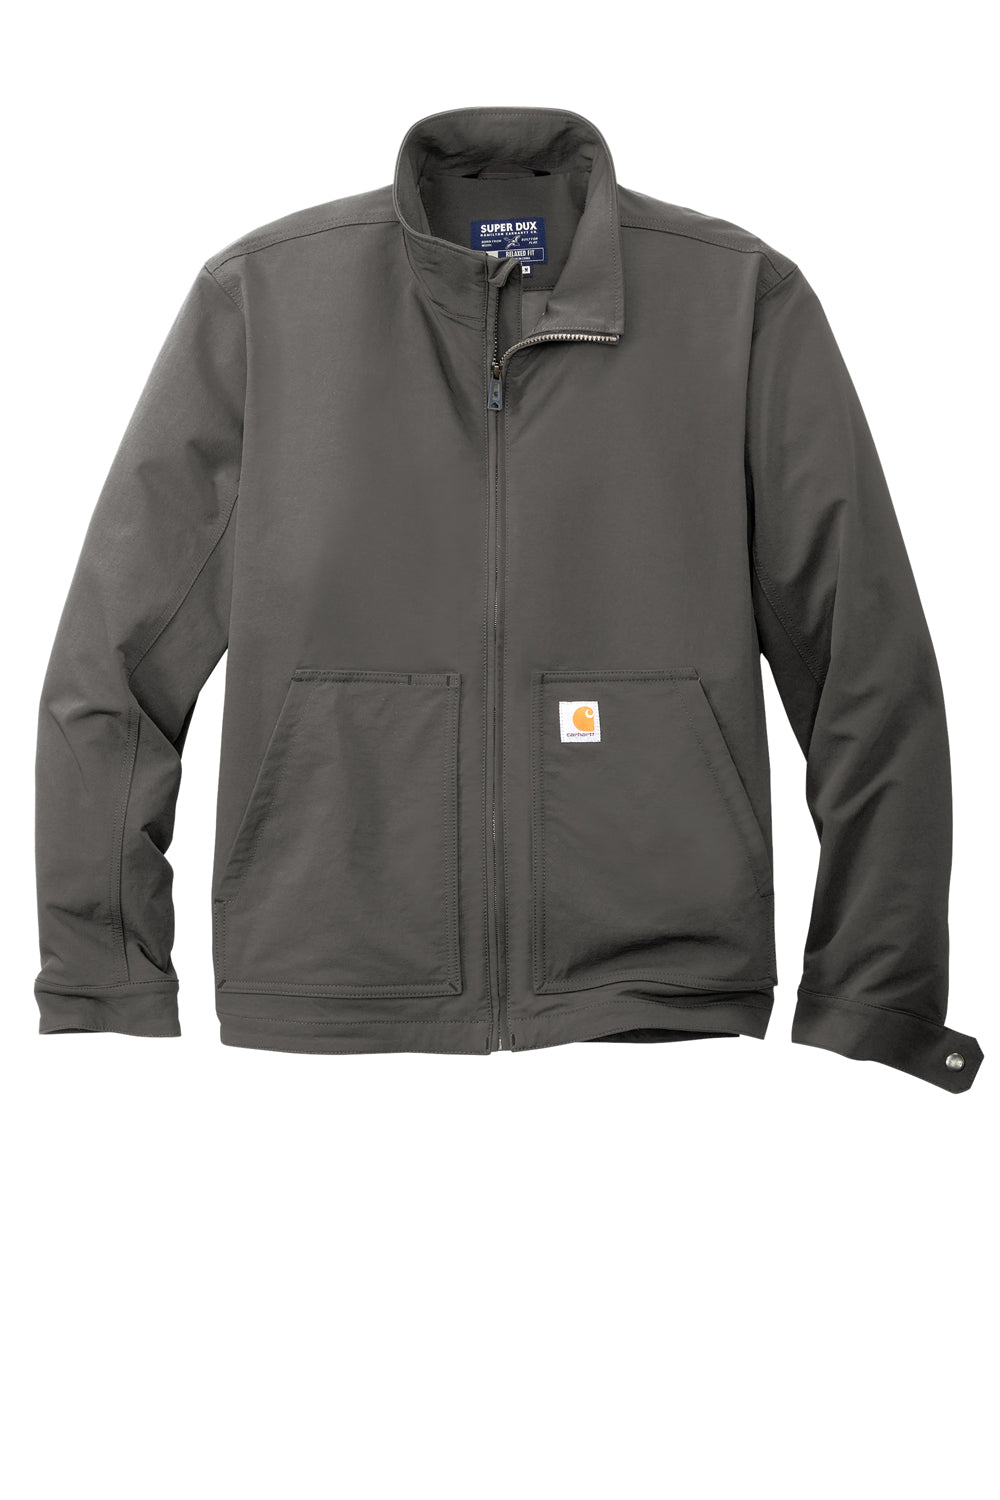 Carhartt CT105534 Mens Super Dux Wind & Water Resistant Full Zip Jacket Gravel Grey Flat Front